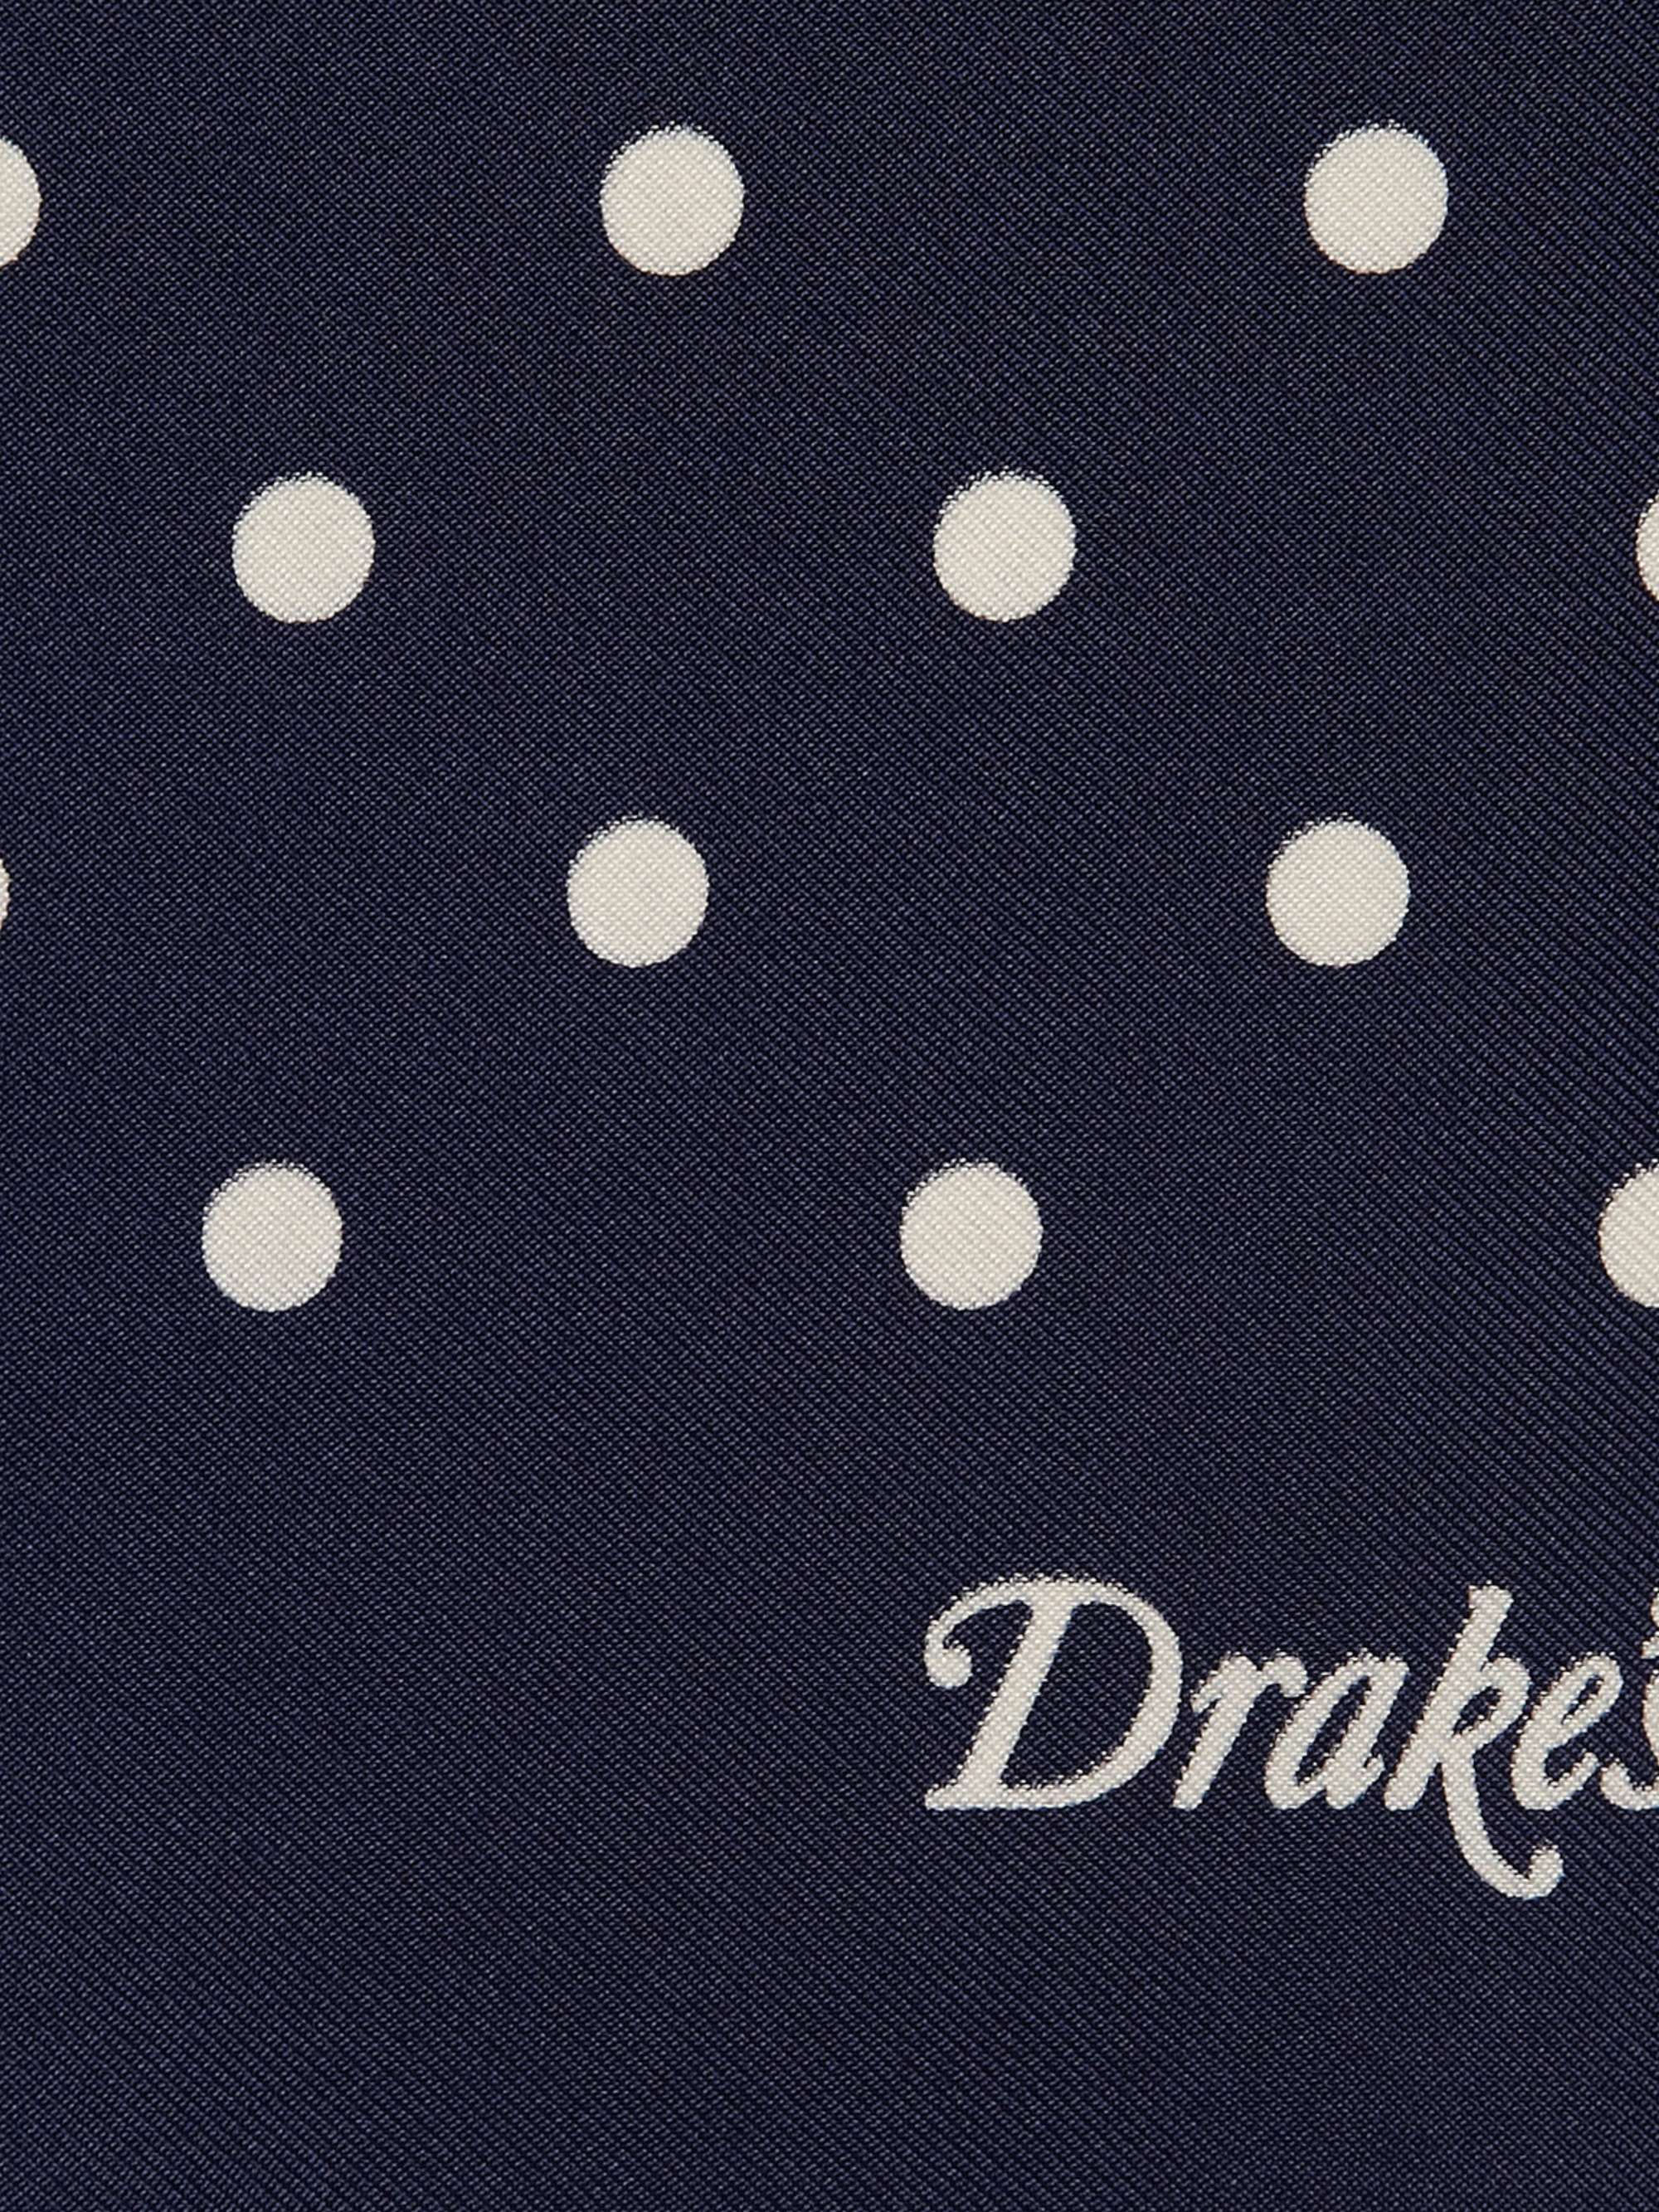 DRAKE'S Polka-Dot Silk Pocket Square